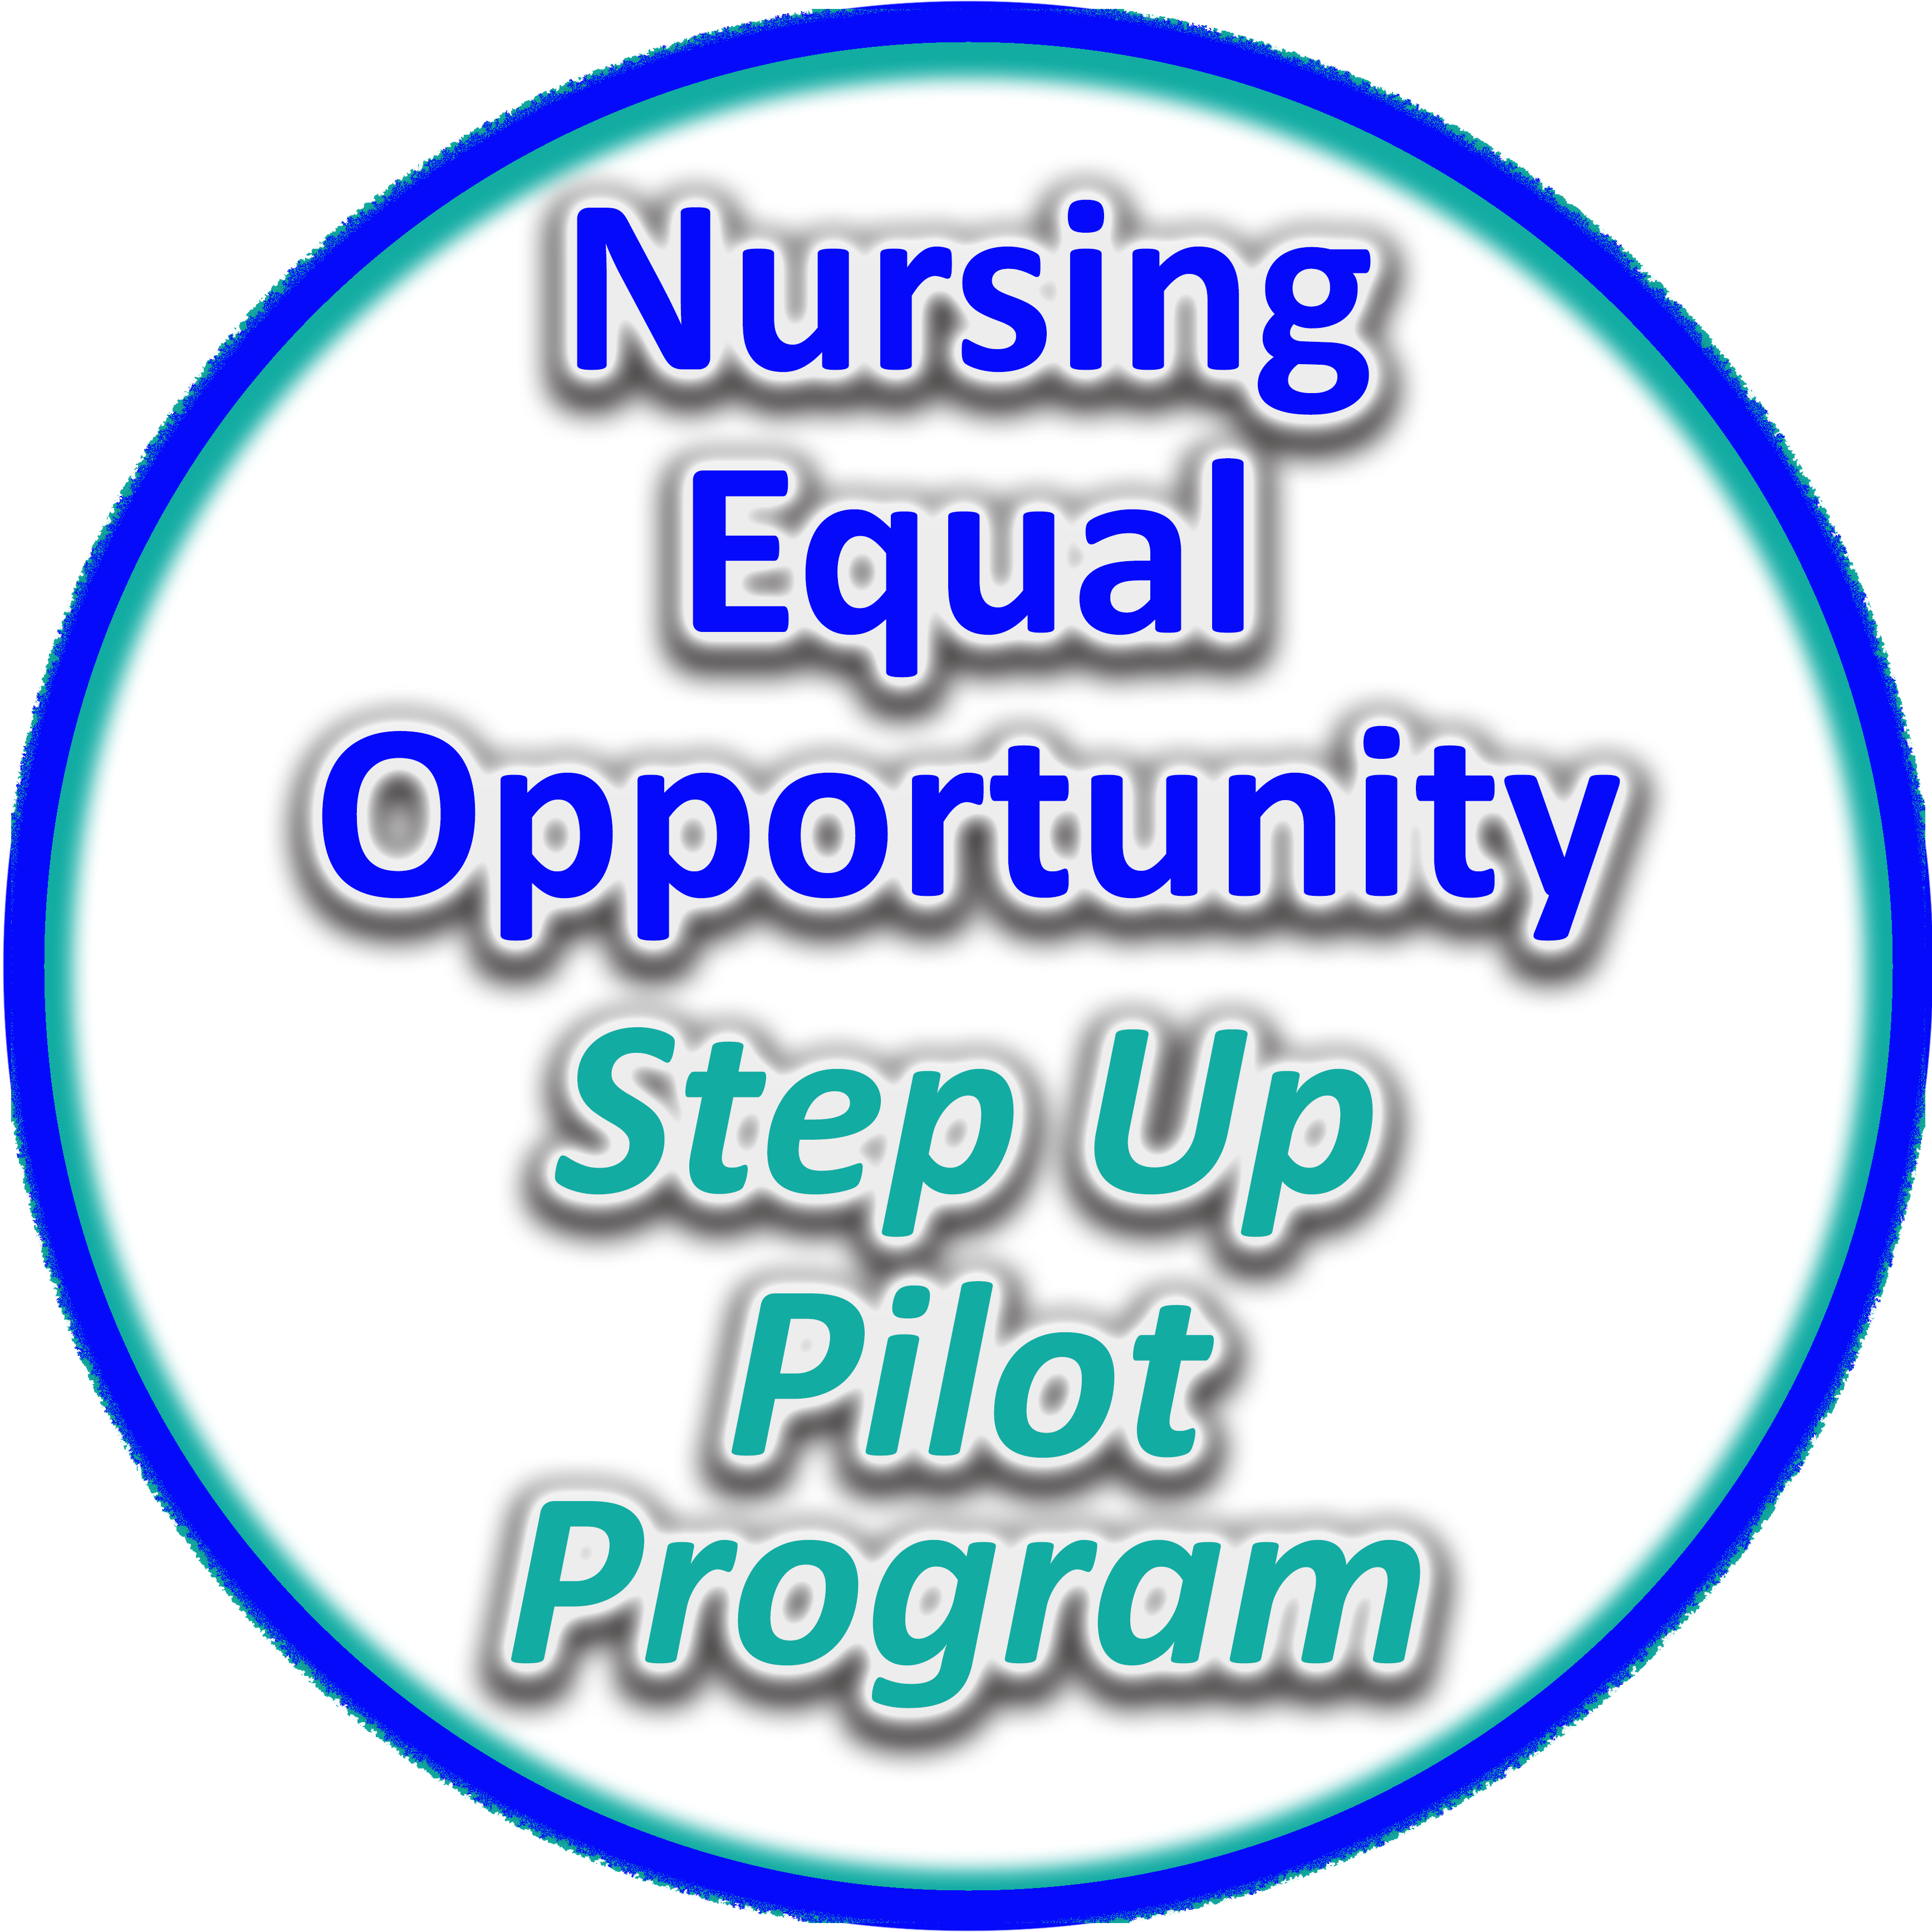 Nursing Equal Opportunity Step Up Pilot Program